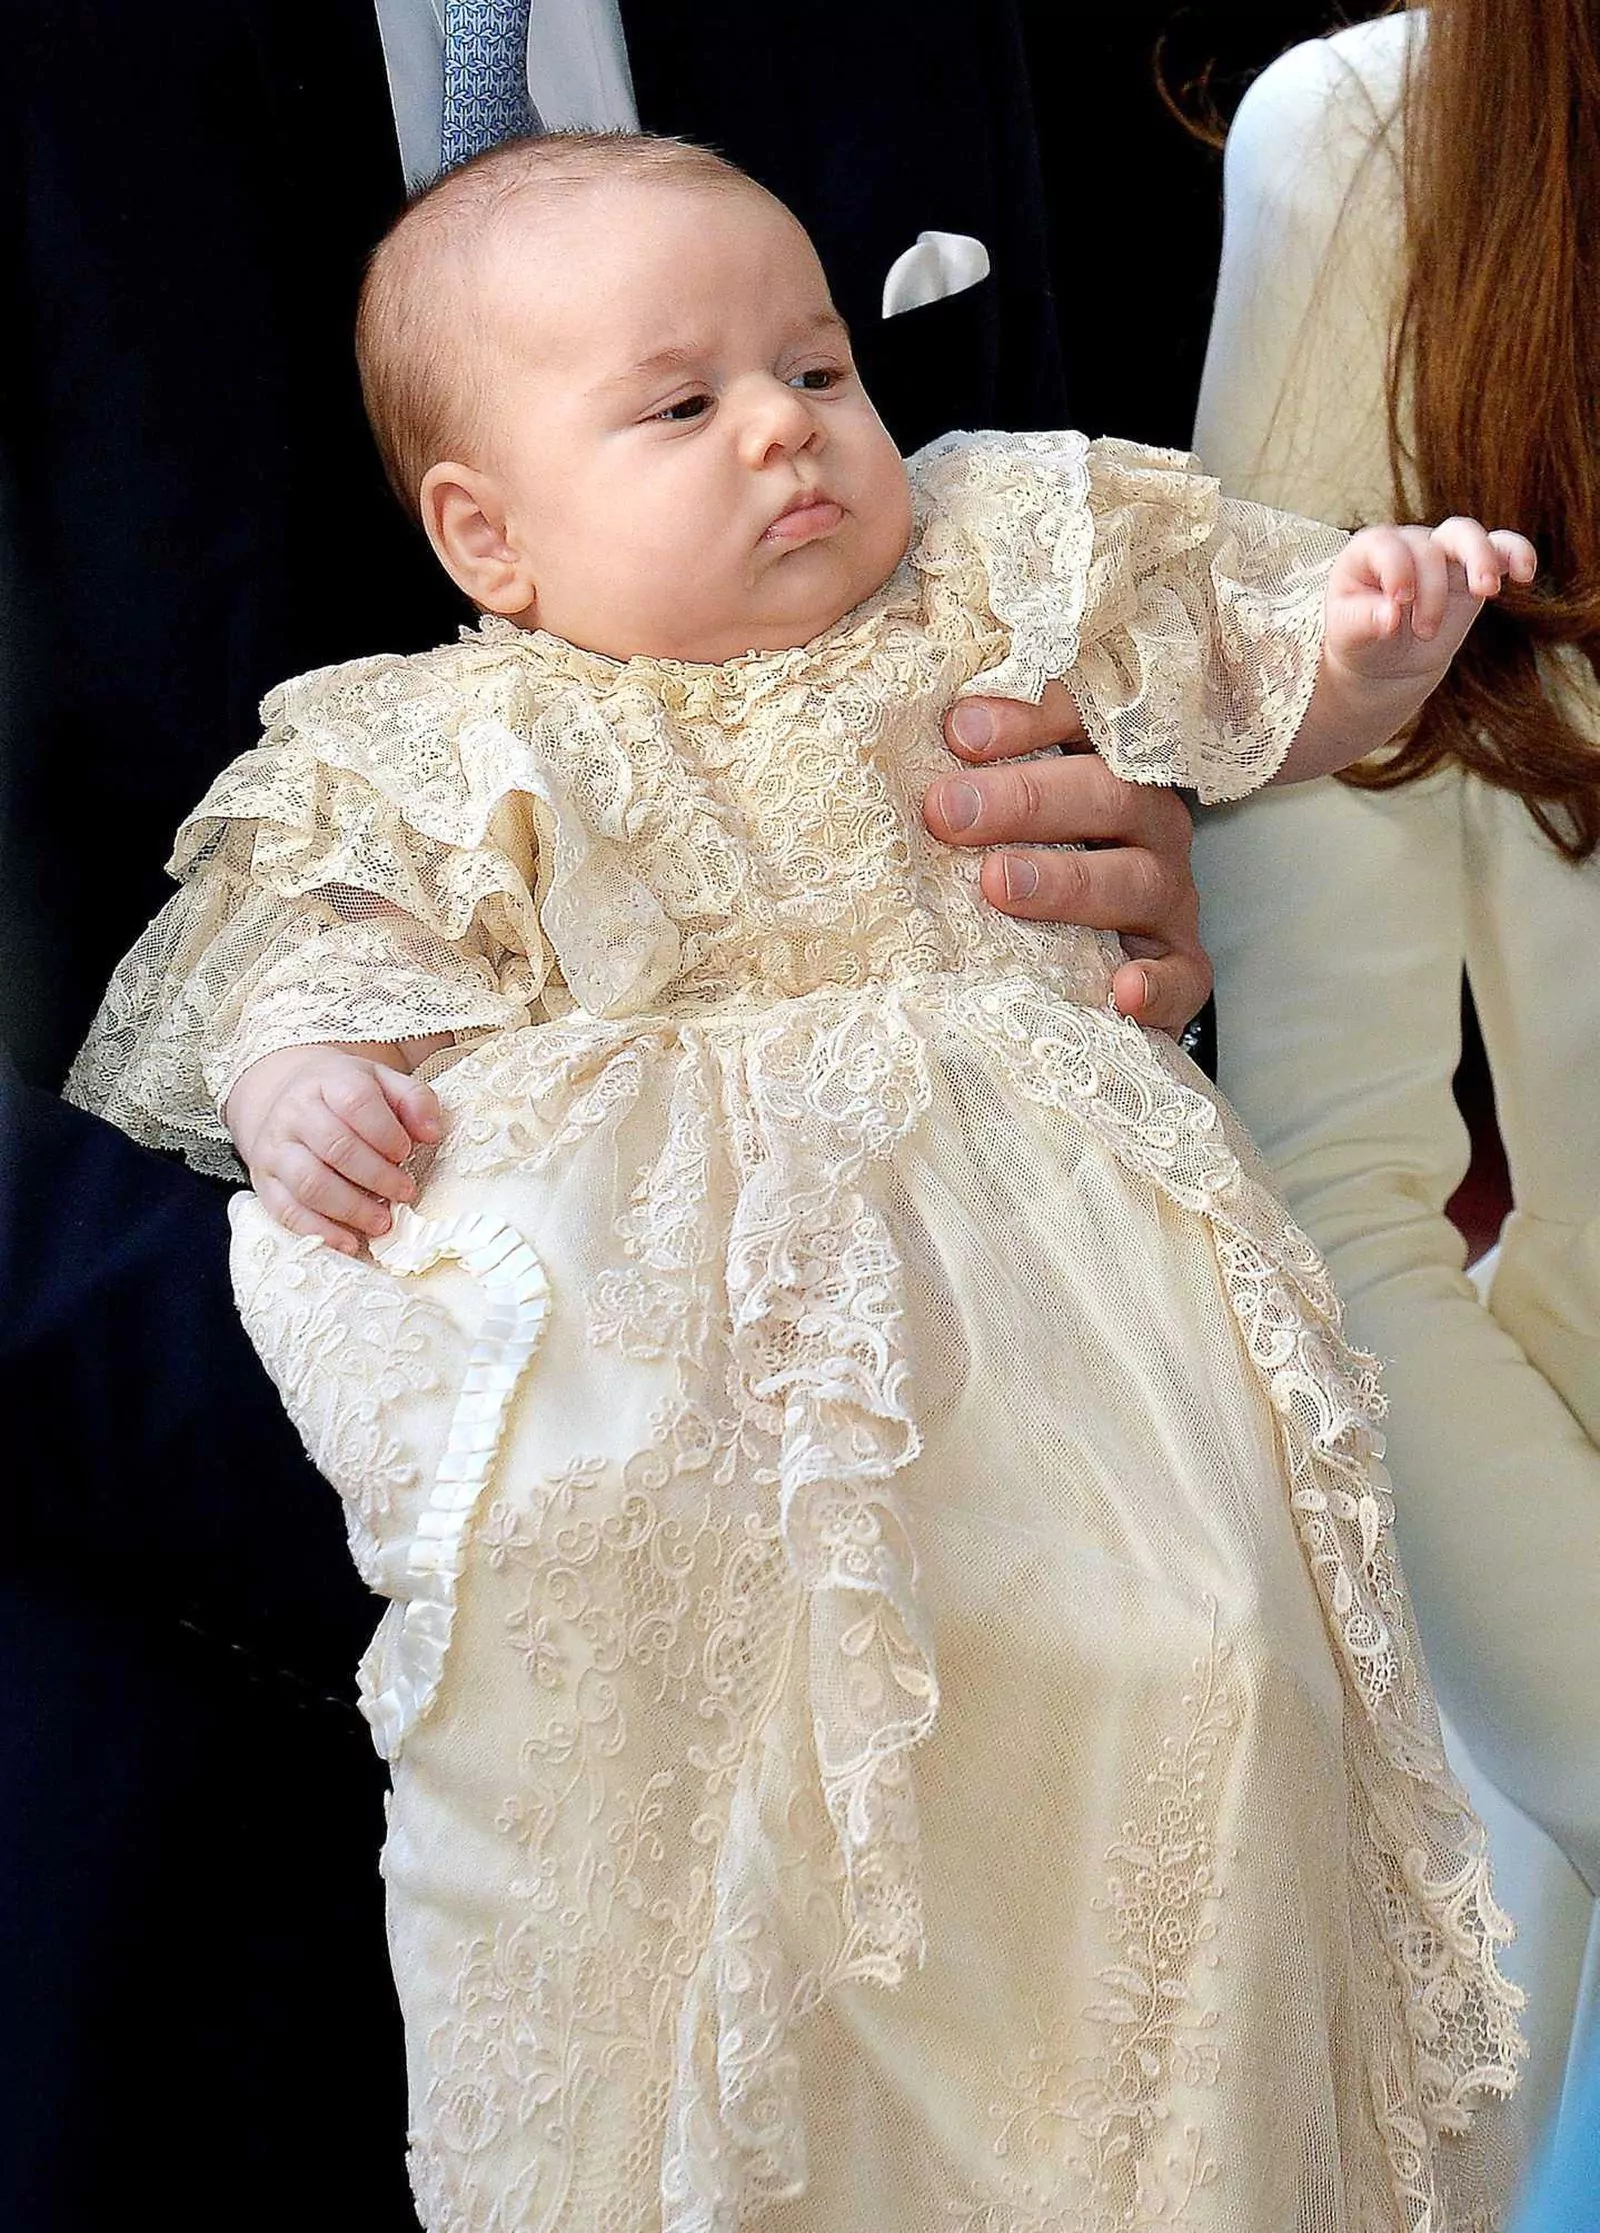 Крещение принца Джорджа в королевской часовне дворца Сент-Джеймс, 23 октября 2013 г.